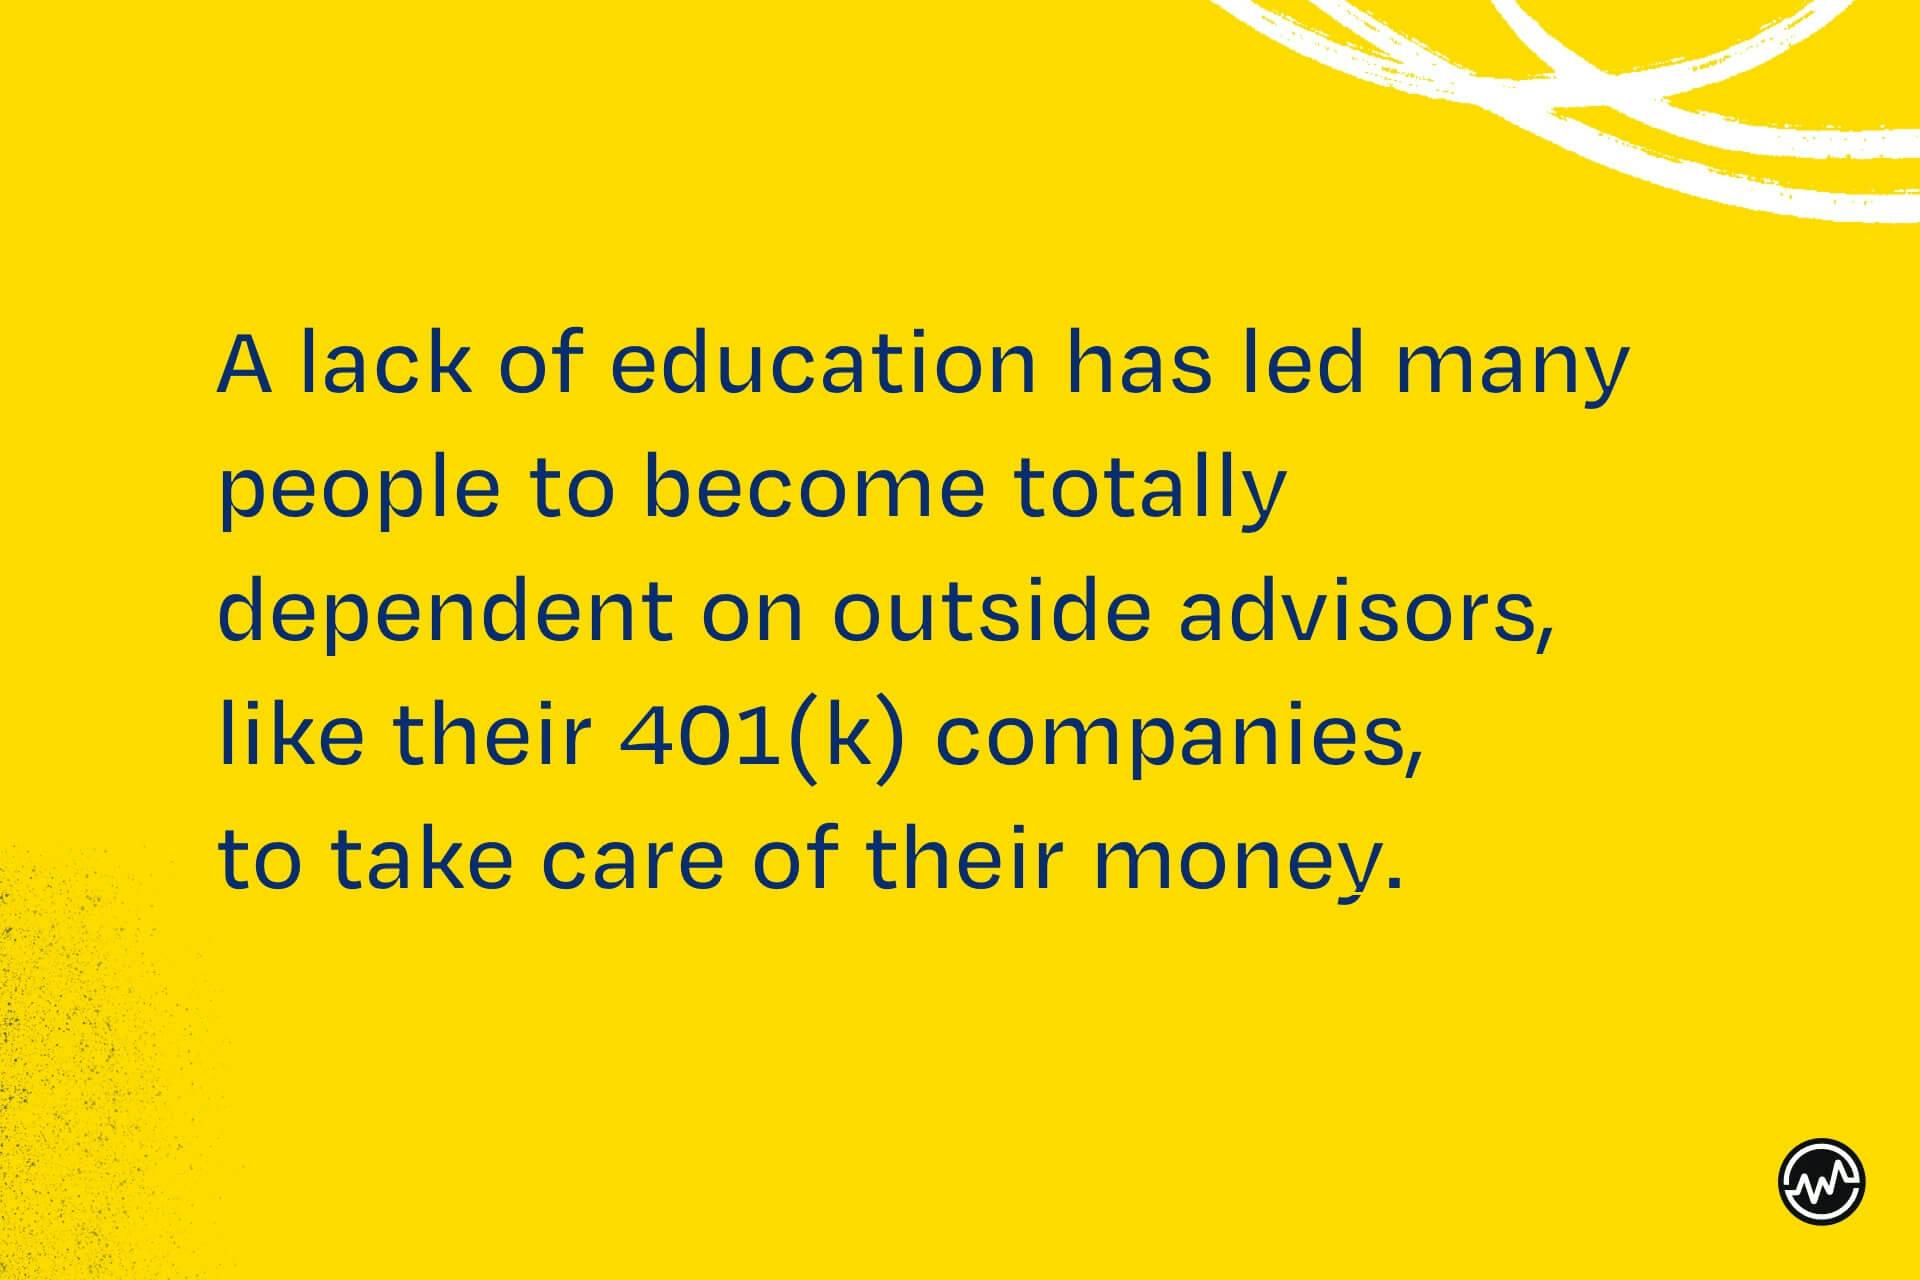  brist på utbildning har lett till att människor blir beroende av externa investerare. Det är därför du behöver lära dig att bli en investerare